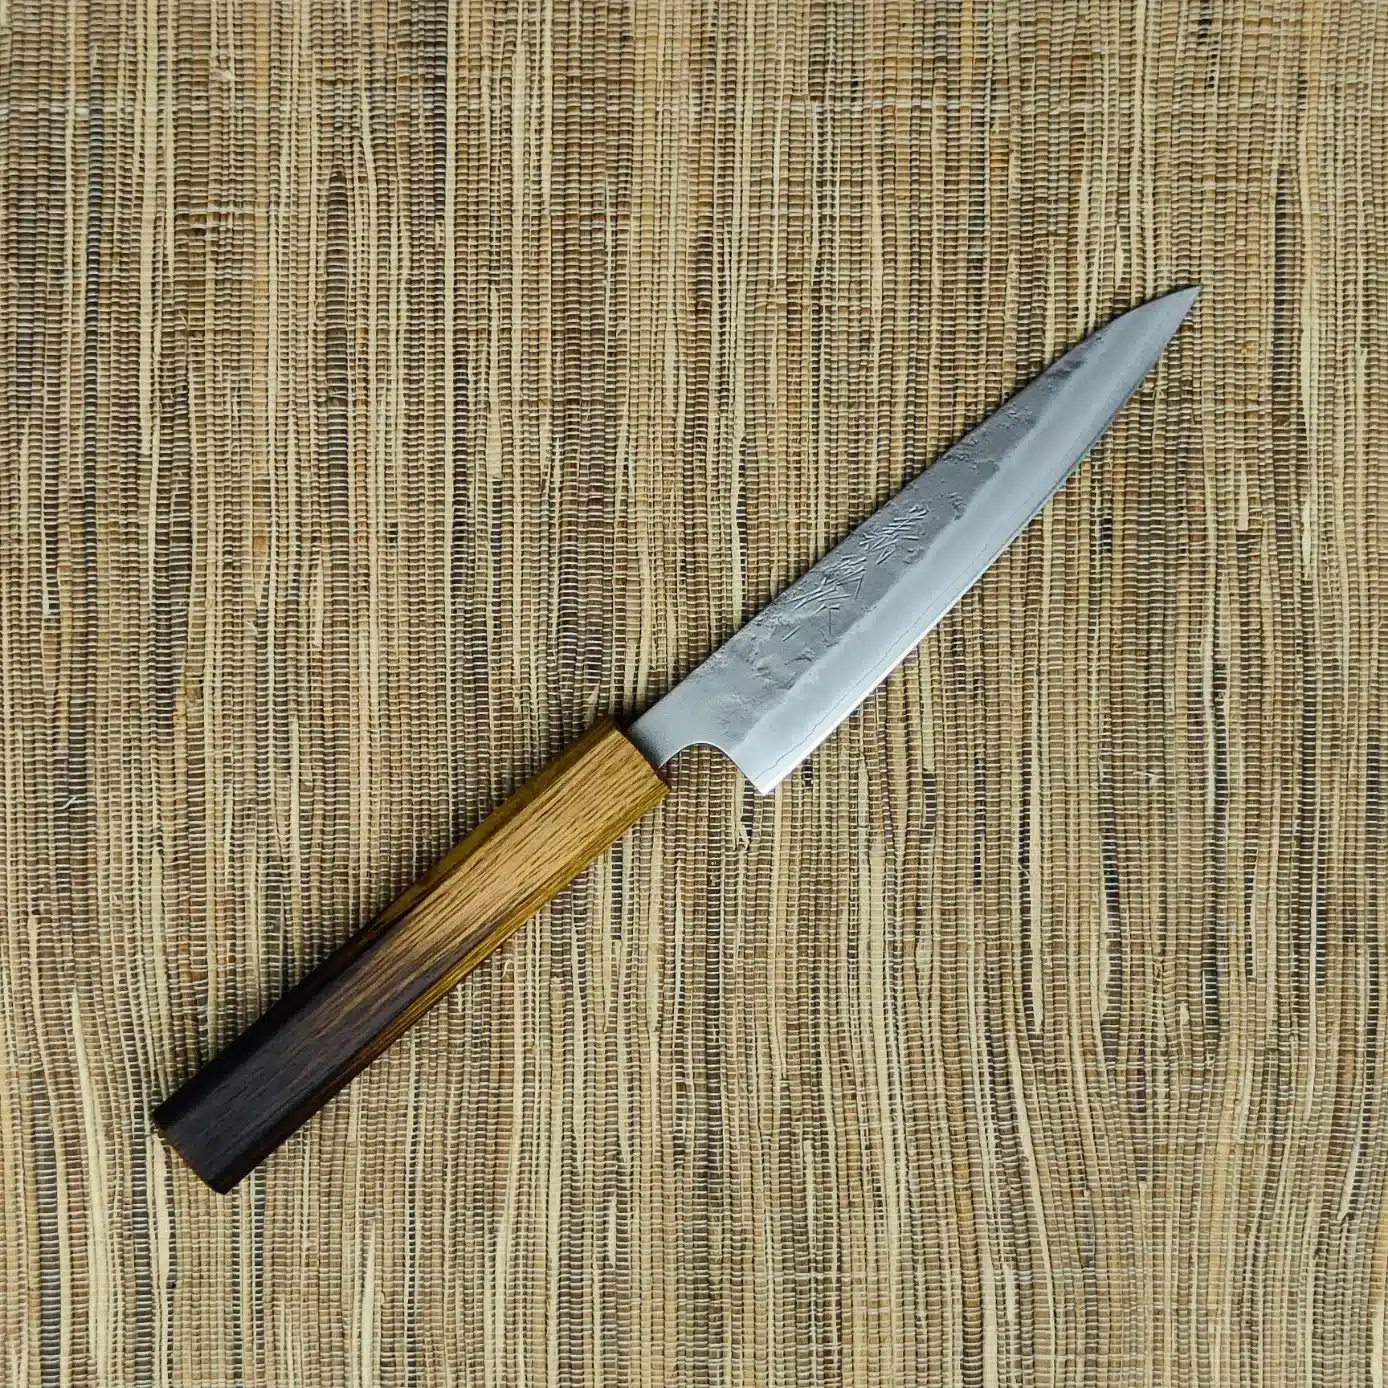 Haiku Nashiji Urushi Utility Knife 135mm